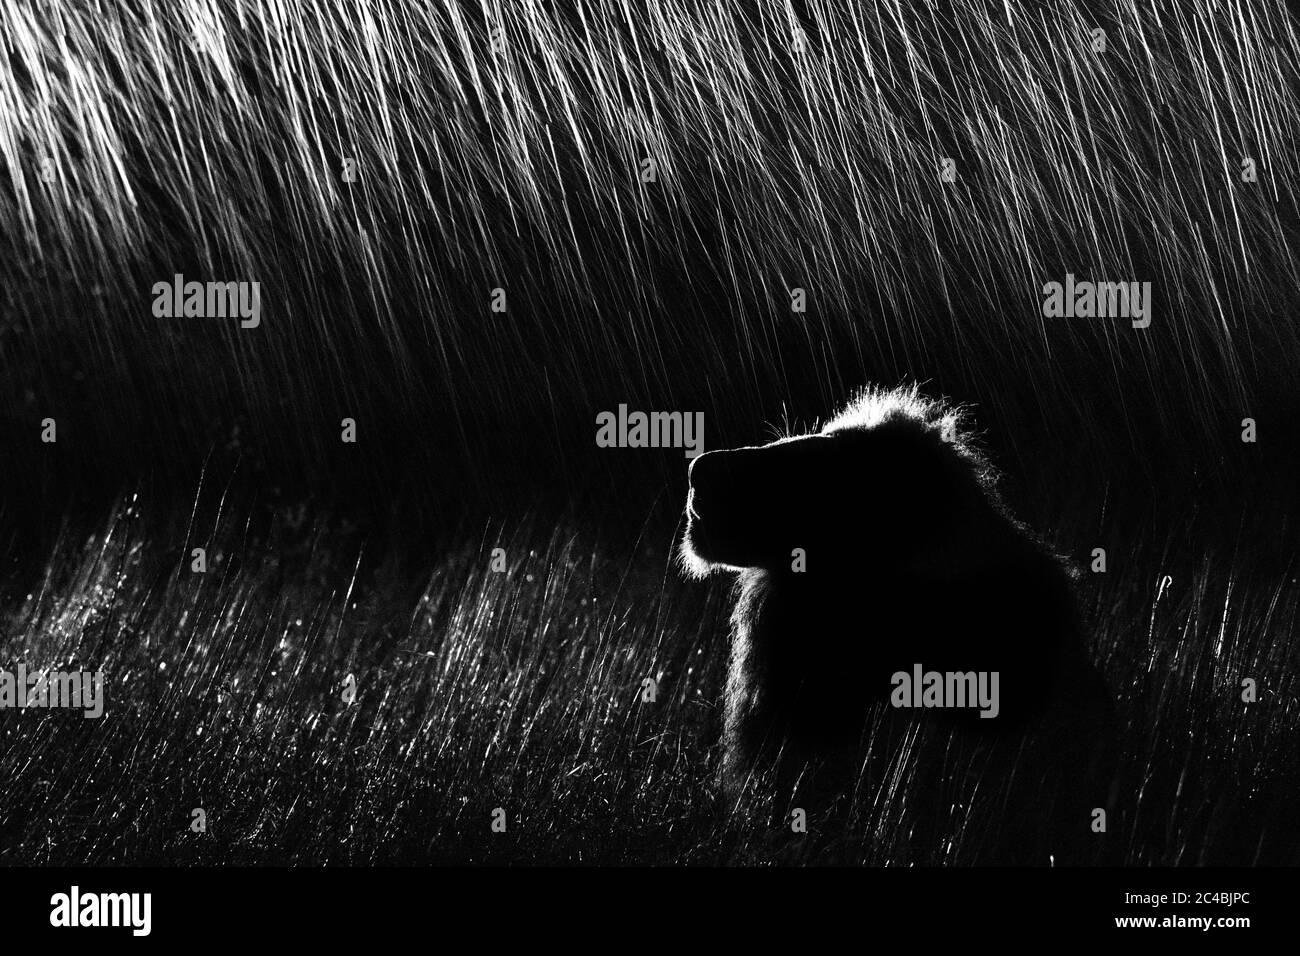 Un profil latéral d'un lion mâle, Panthera leo, allongé dans une grande herbe, regardant, la nuit, éclairé par un spot, en noir et blanc Banque D'Images